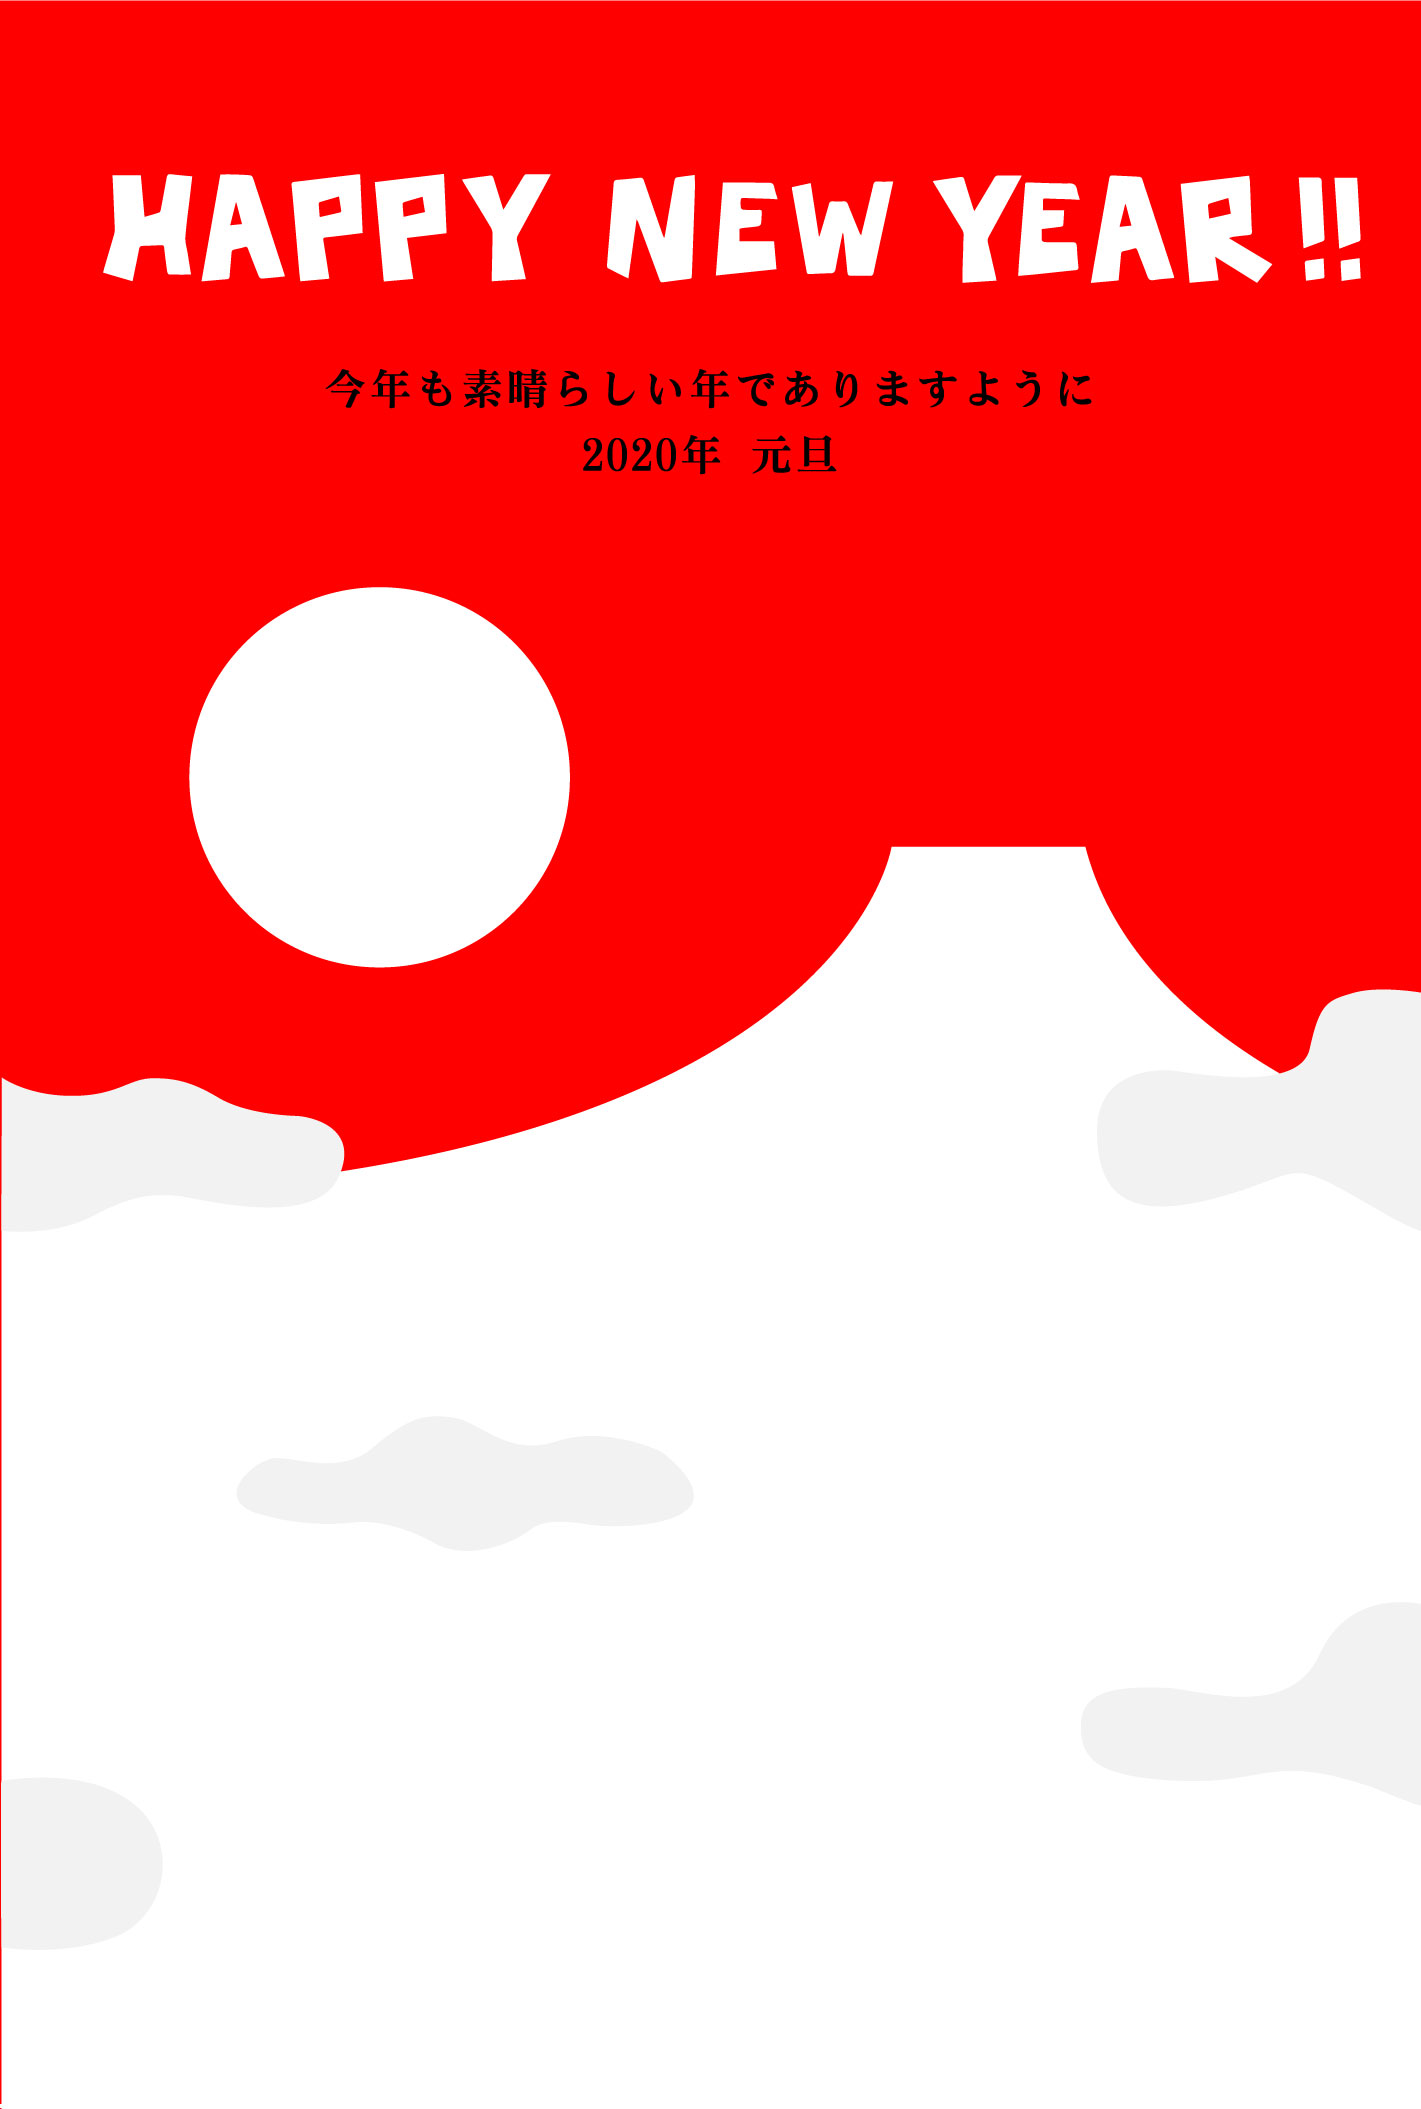 「happy new year」赤い富士山と初日の出のシルエットの無料年賀状イラスト素材です